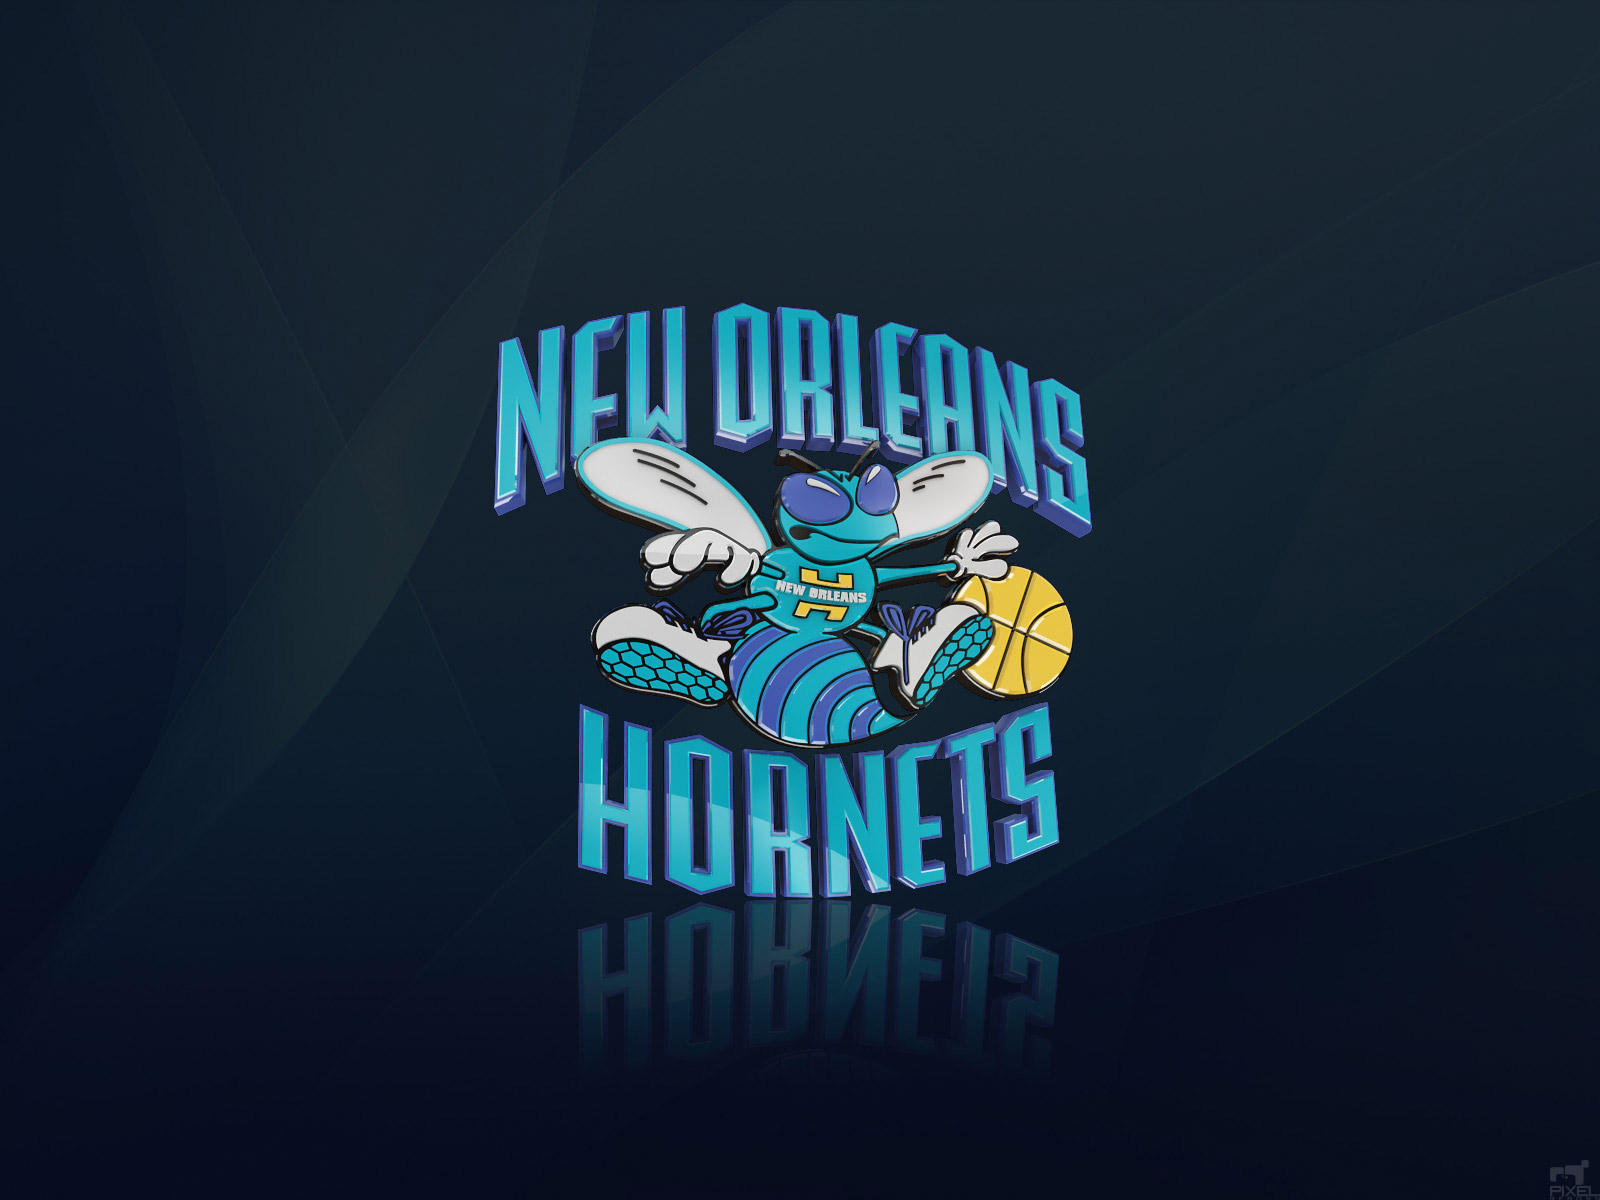 http://3.bp.blogspot.com/-wRUczjsf3MI/UKN0gcmEXII/AAAAAAAAAqA/swBrQ-8Nehg/s1600/new-orleans-hornets-logo-wallpaper.jpg